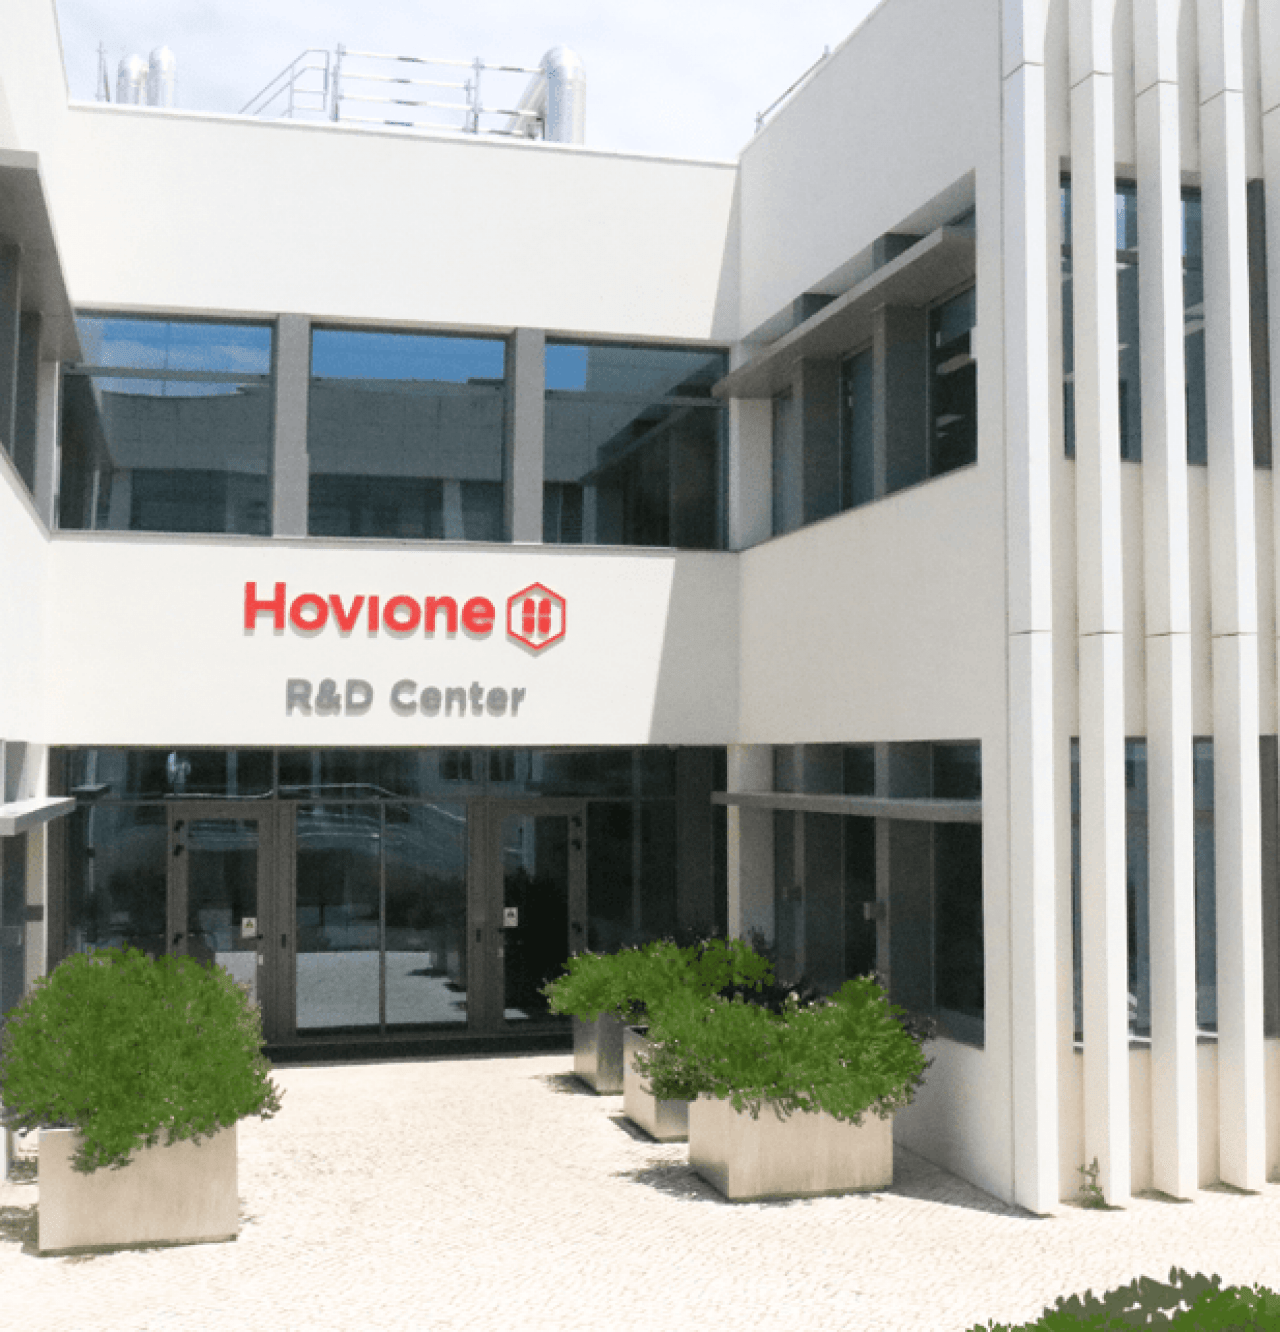 R&D Center in Portugal | Hovione